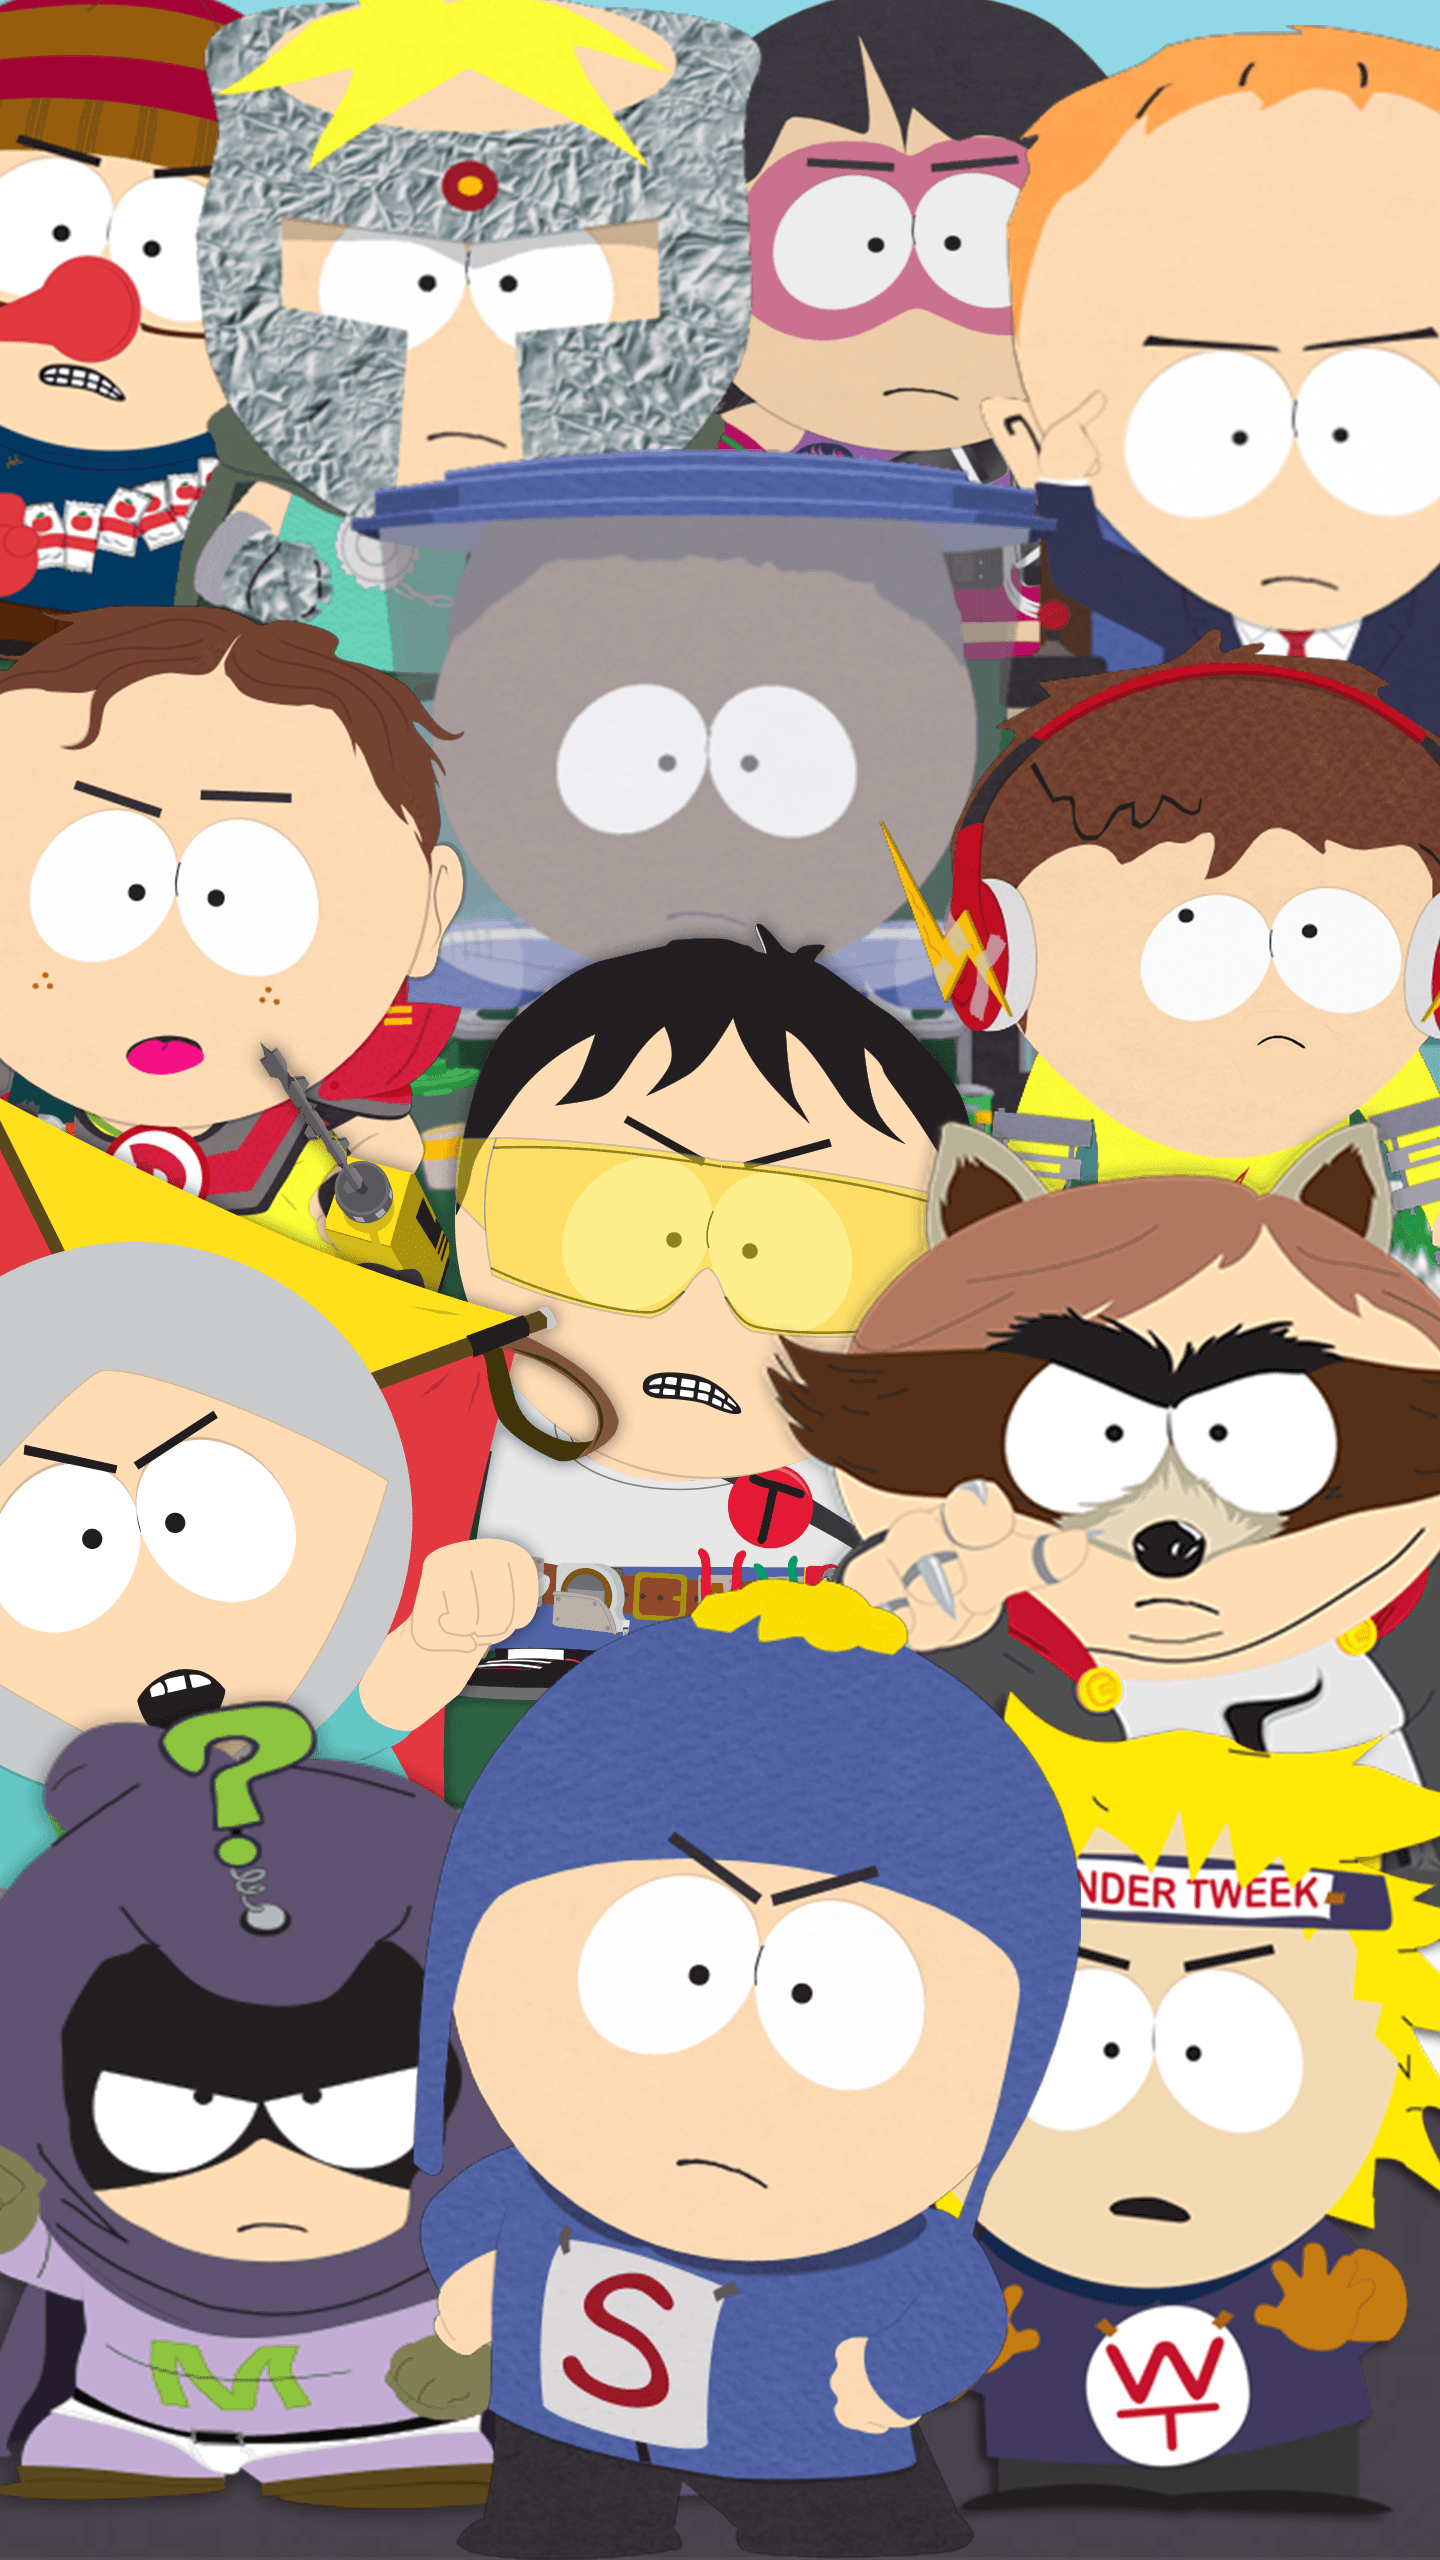 Goin' down to South Park.com